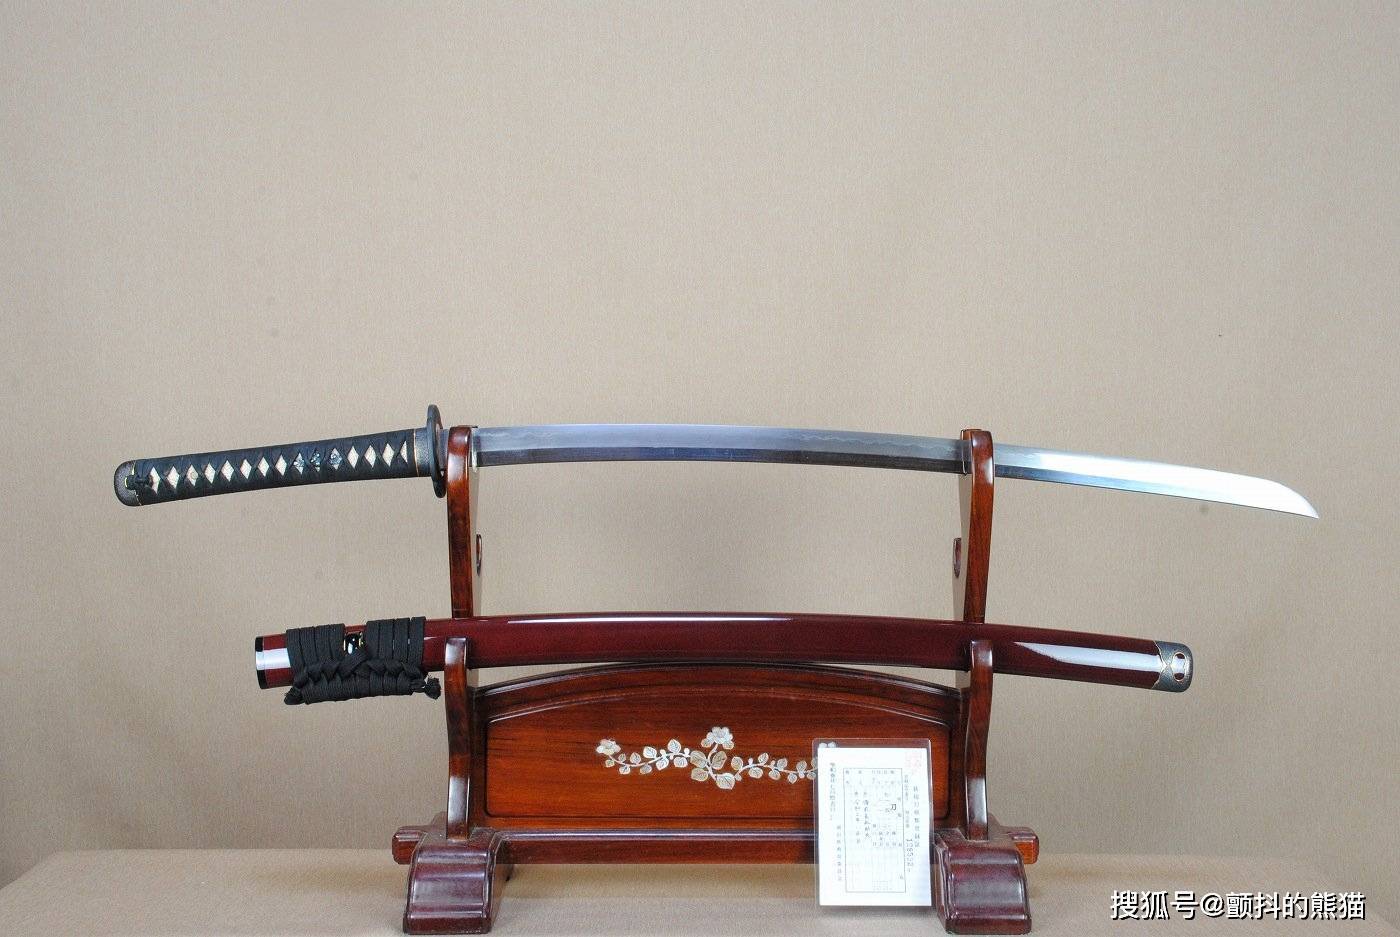 网友喜爱的日本刀排行榜 都是日本历史上的名刀